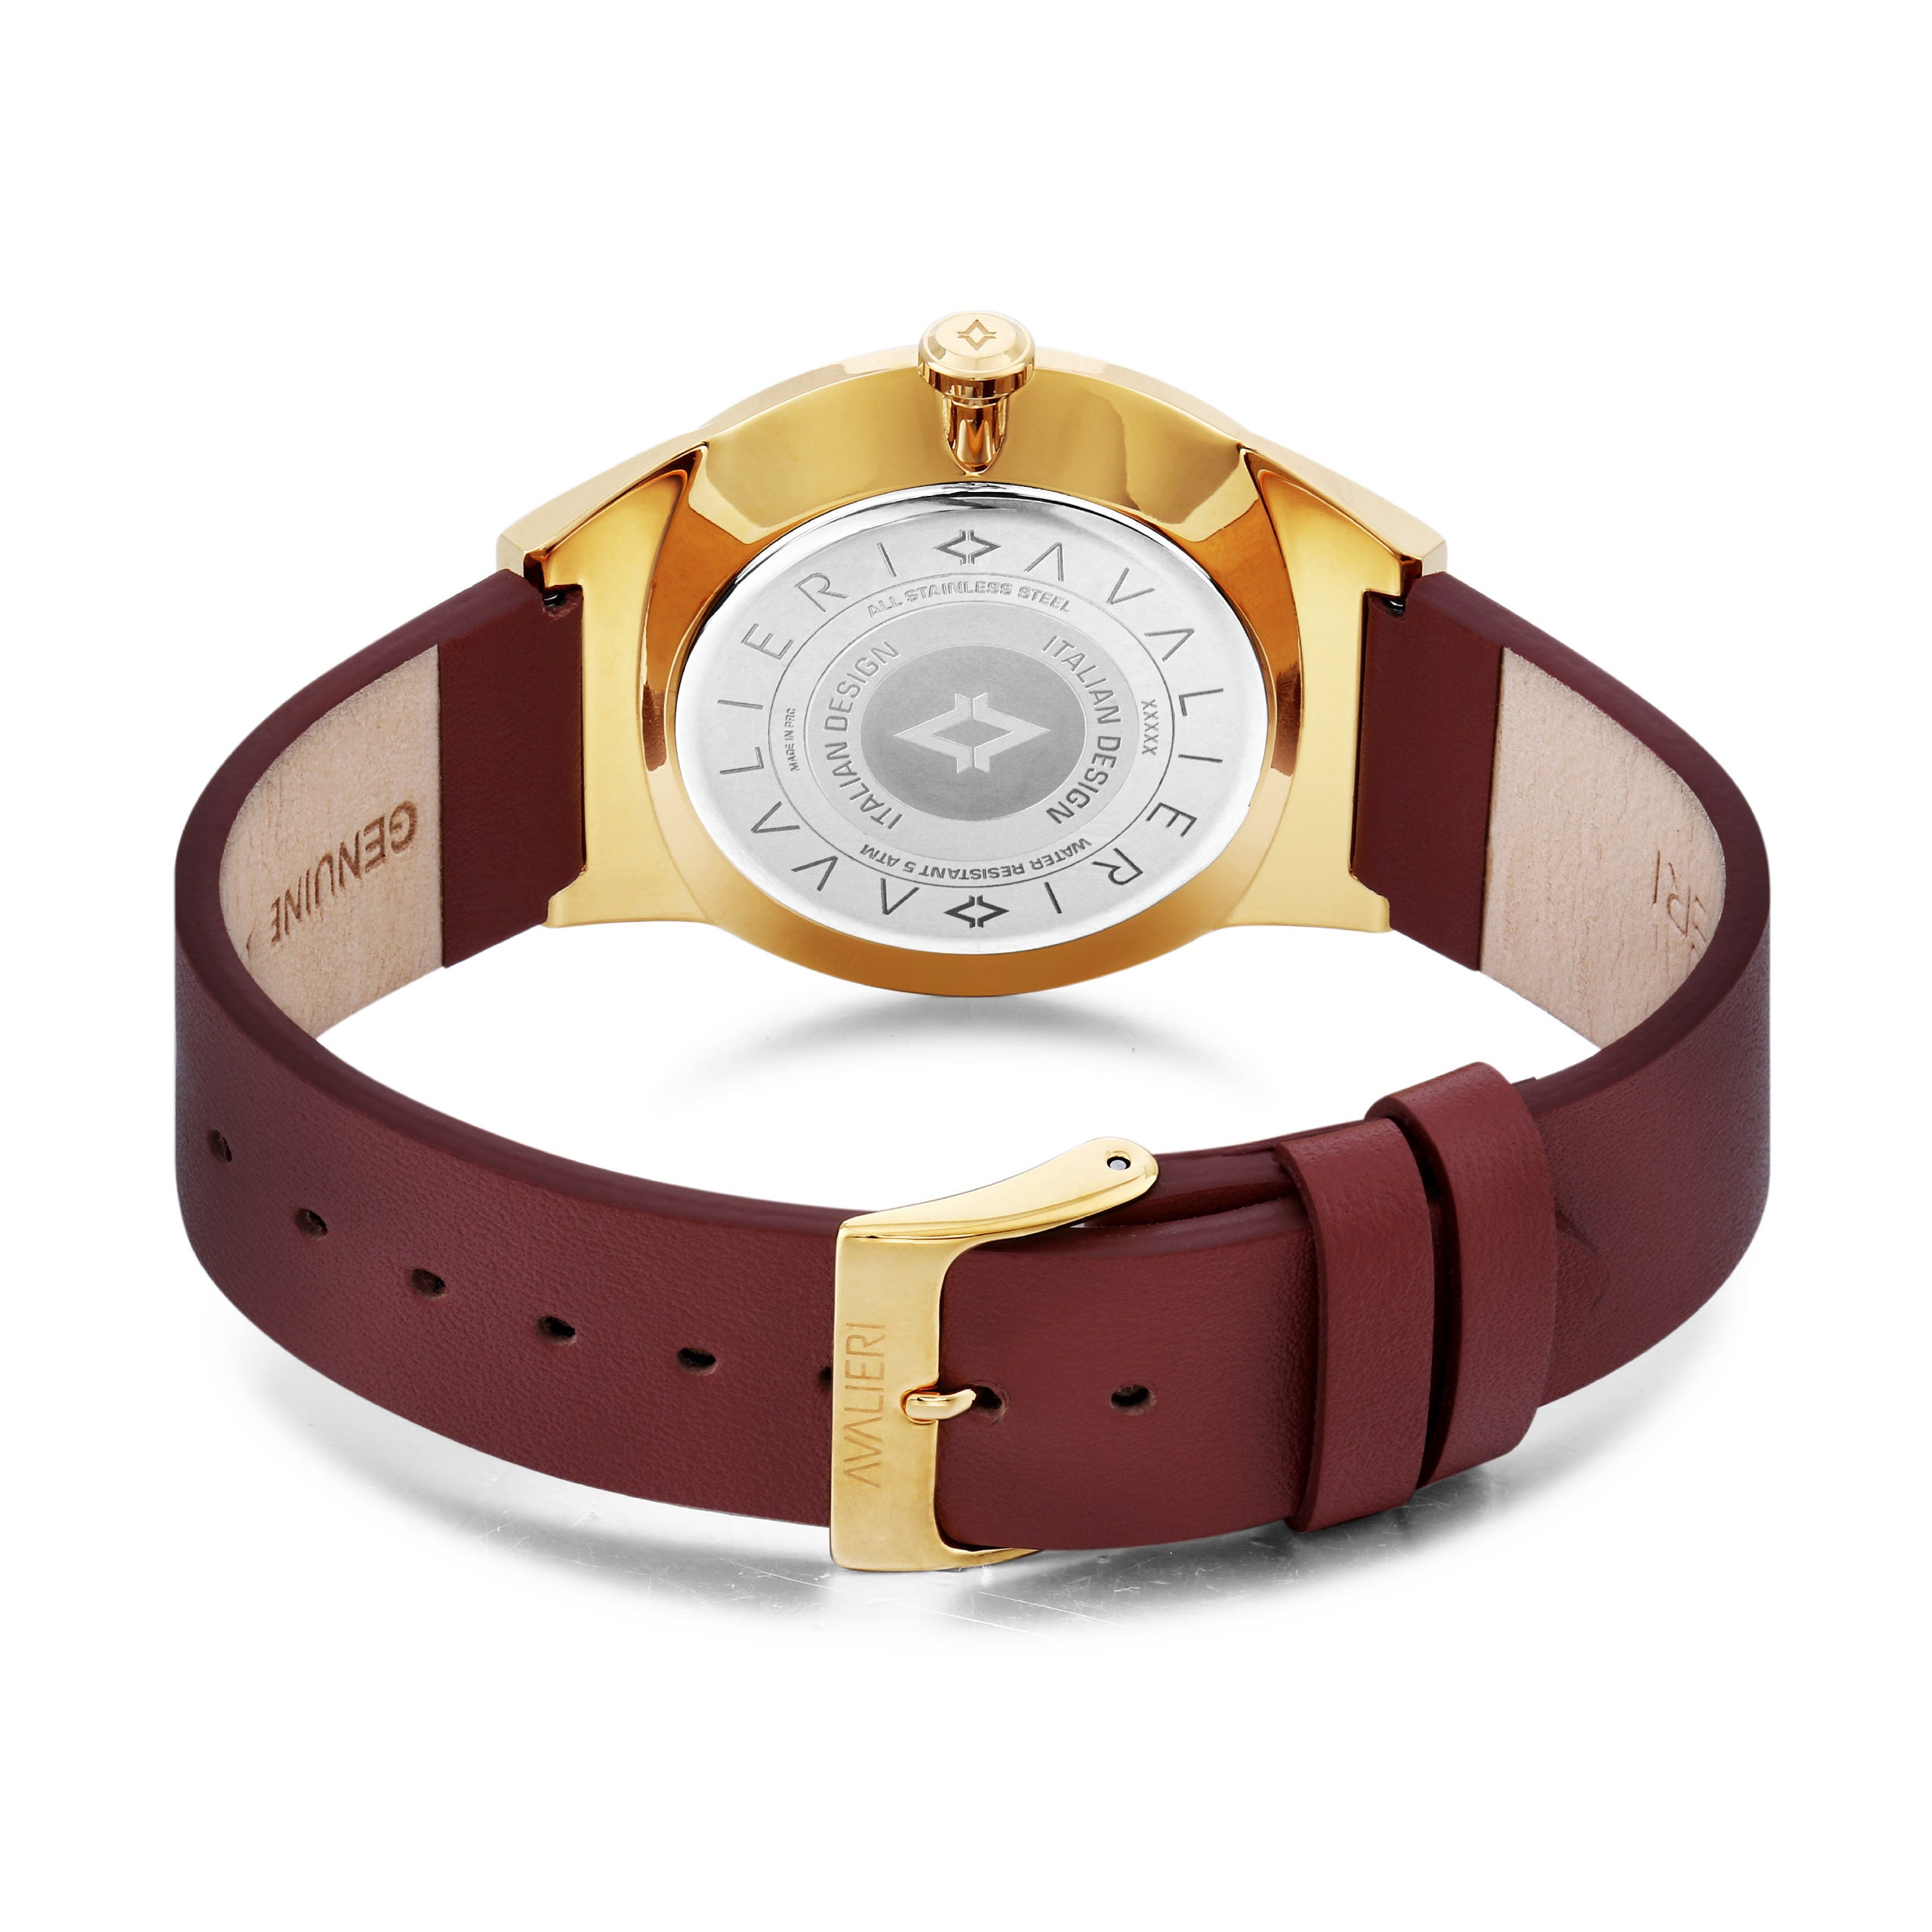 Avalieri Men's Quartz Watch Gold Dial - AV-2161B